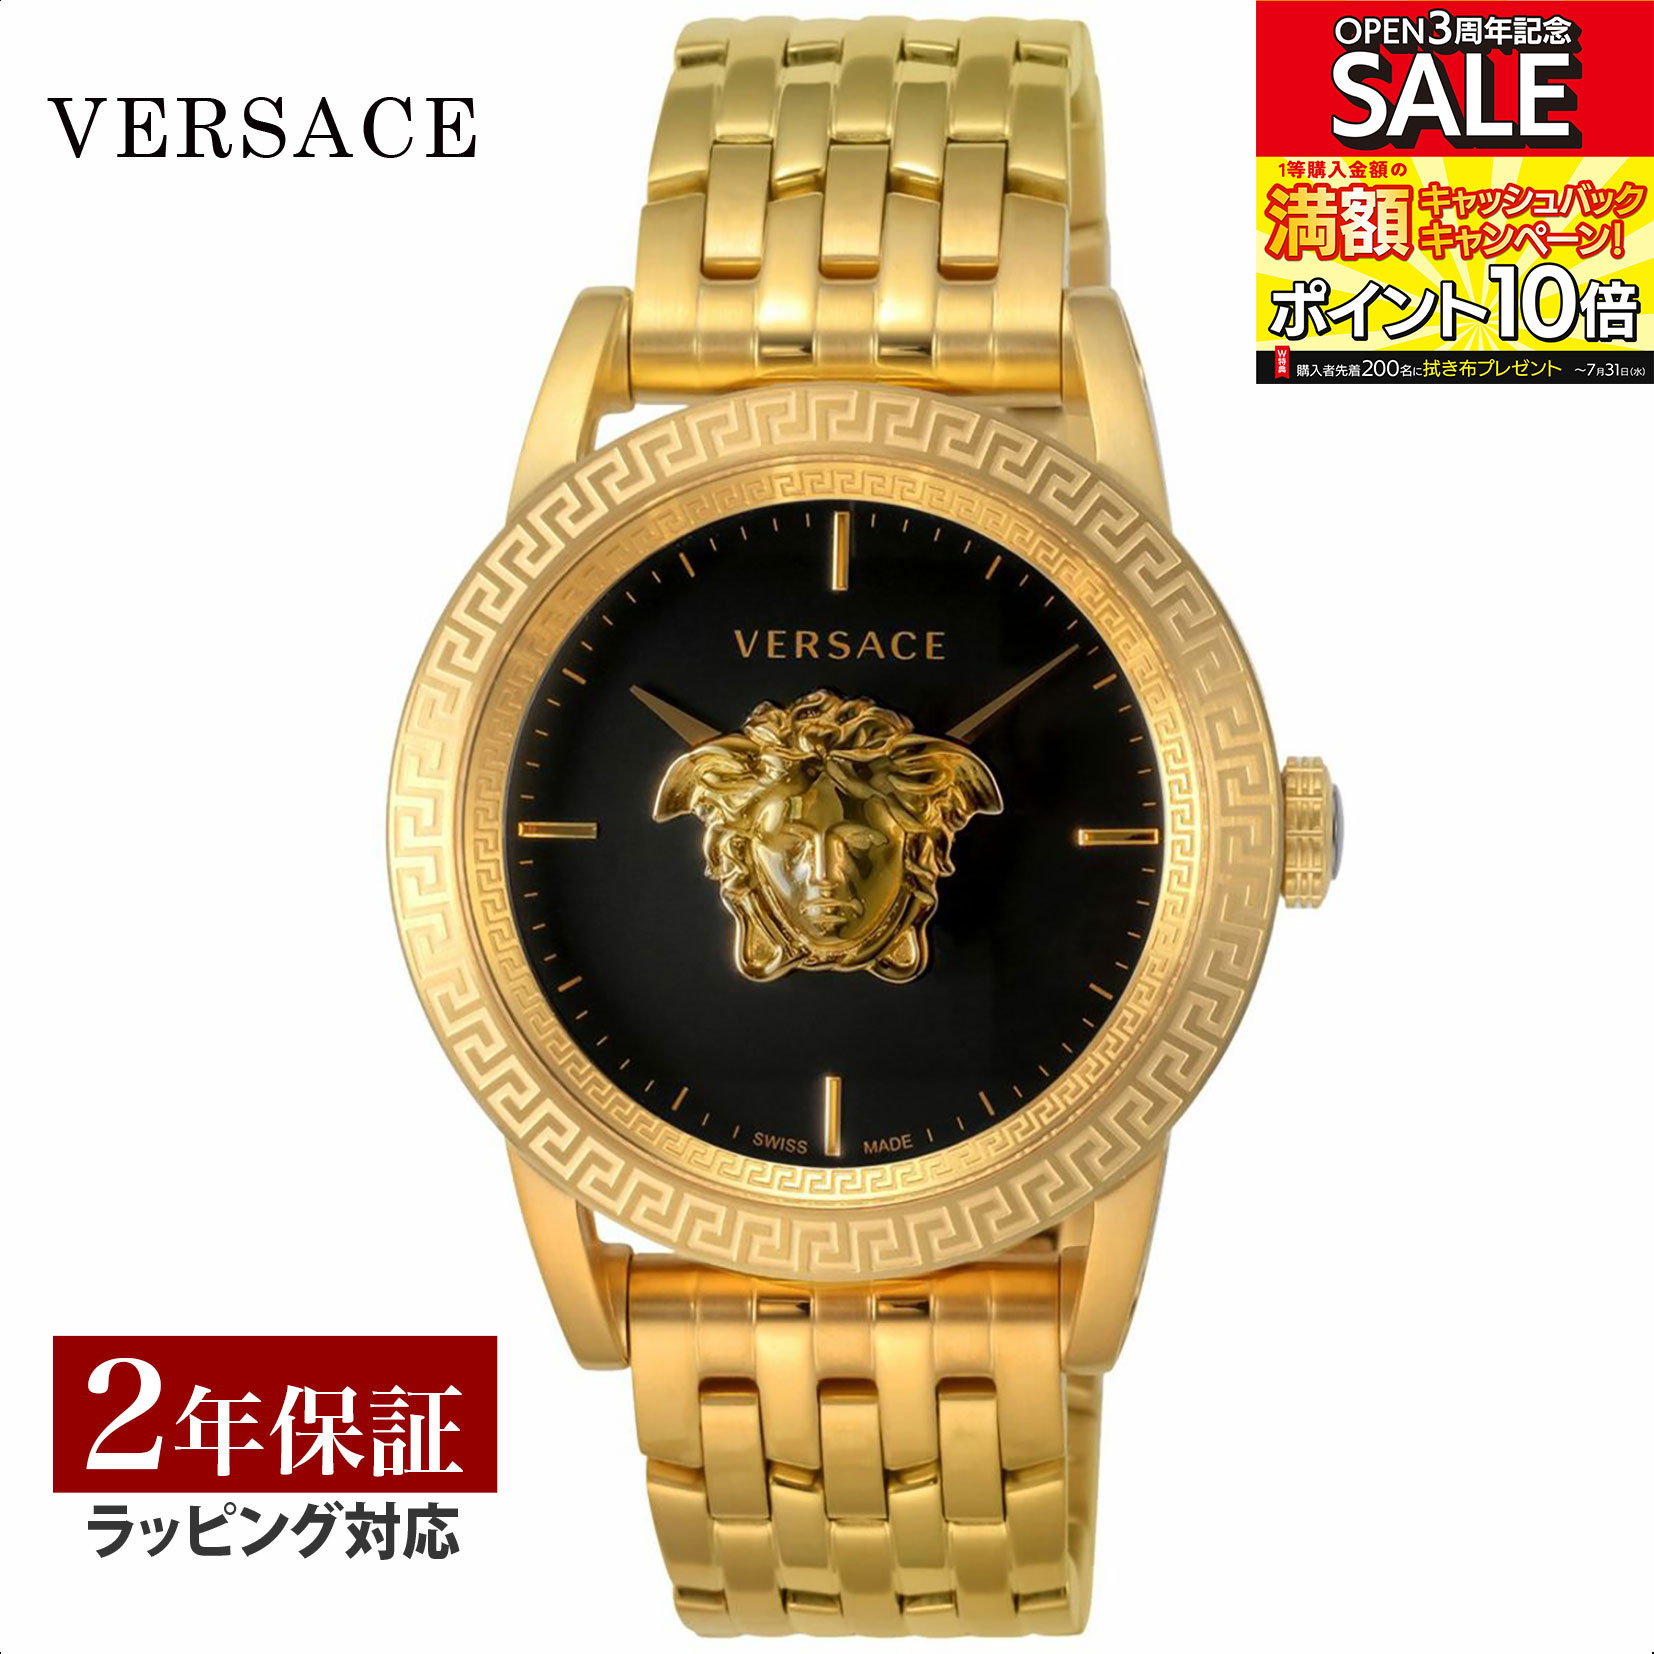 ヴェルサーチ 腕時計（メンズ） ヴェルサーチェ ヴェルサーチ VERSACE メンズ 時計 PALAZZO EMPIRE クォーツ ブラック VERD00819 時計 腕時計 高級腕時計 ブランド